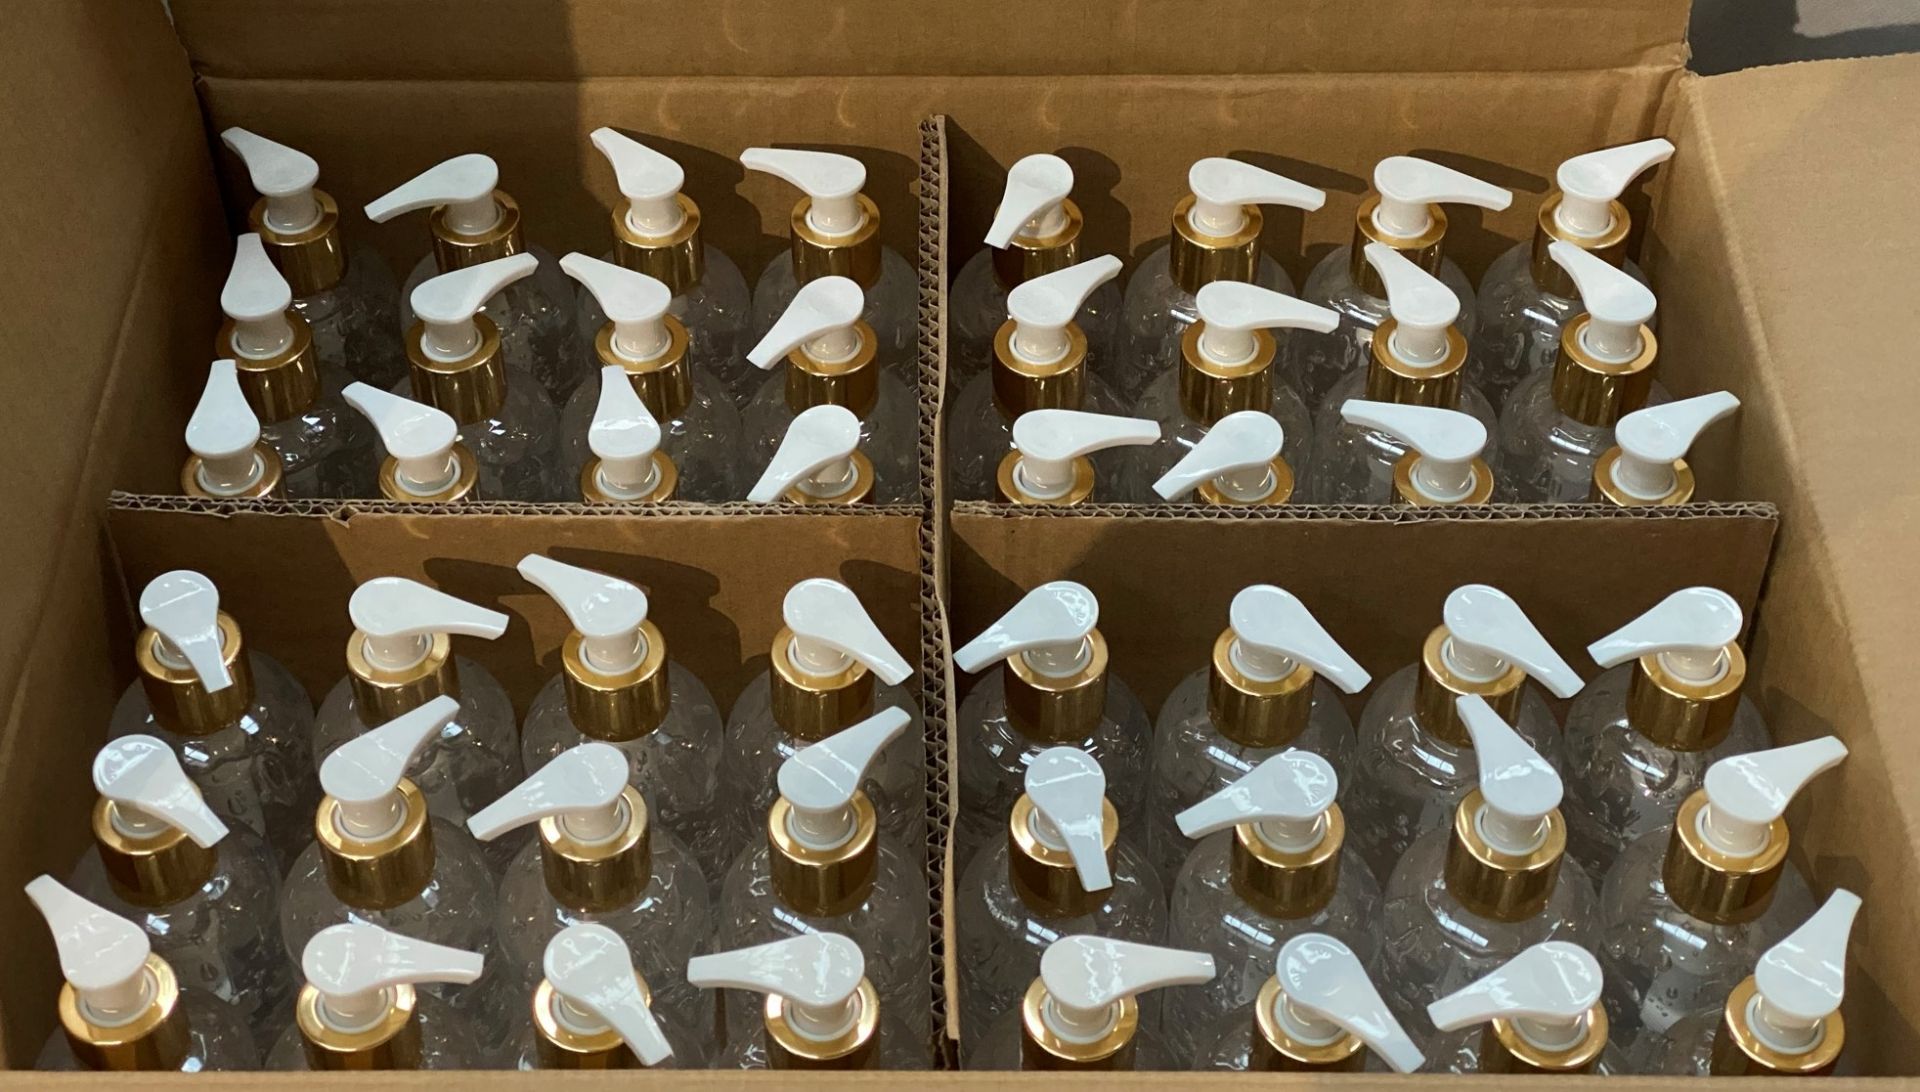 96 x 200ml pump top bottles of Rosdon Group UK hand sanitiser (Unlabelled clear plastic bottles) - - Image 2 of 12